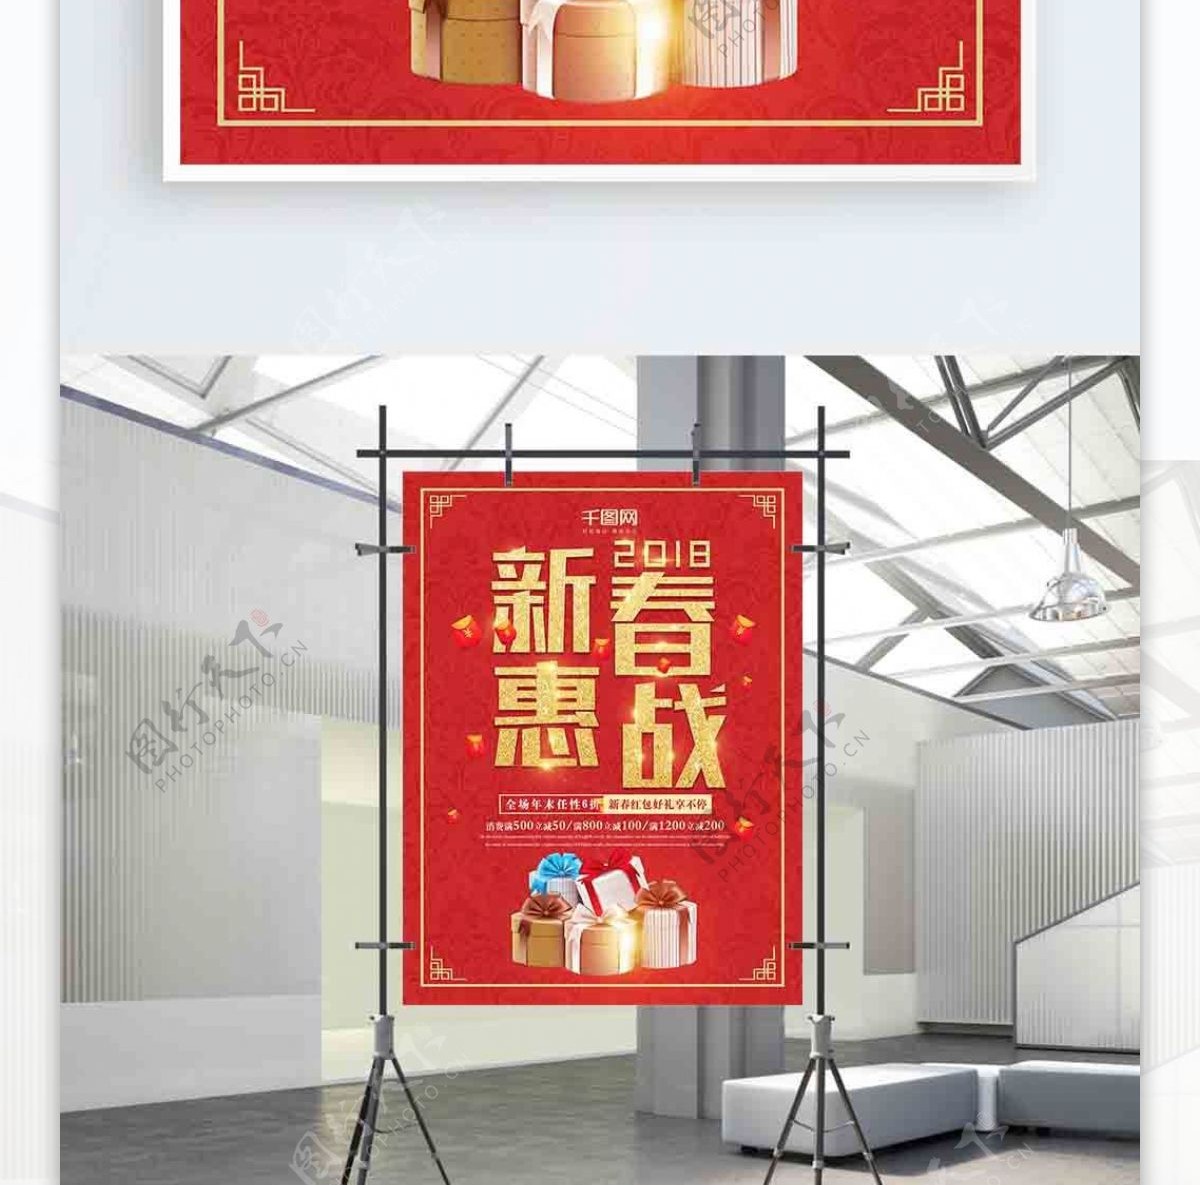 简约红色新春惠战促销宣传海报设计